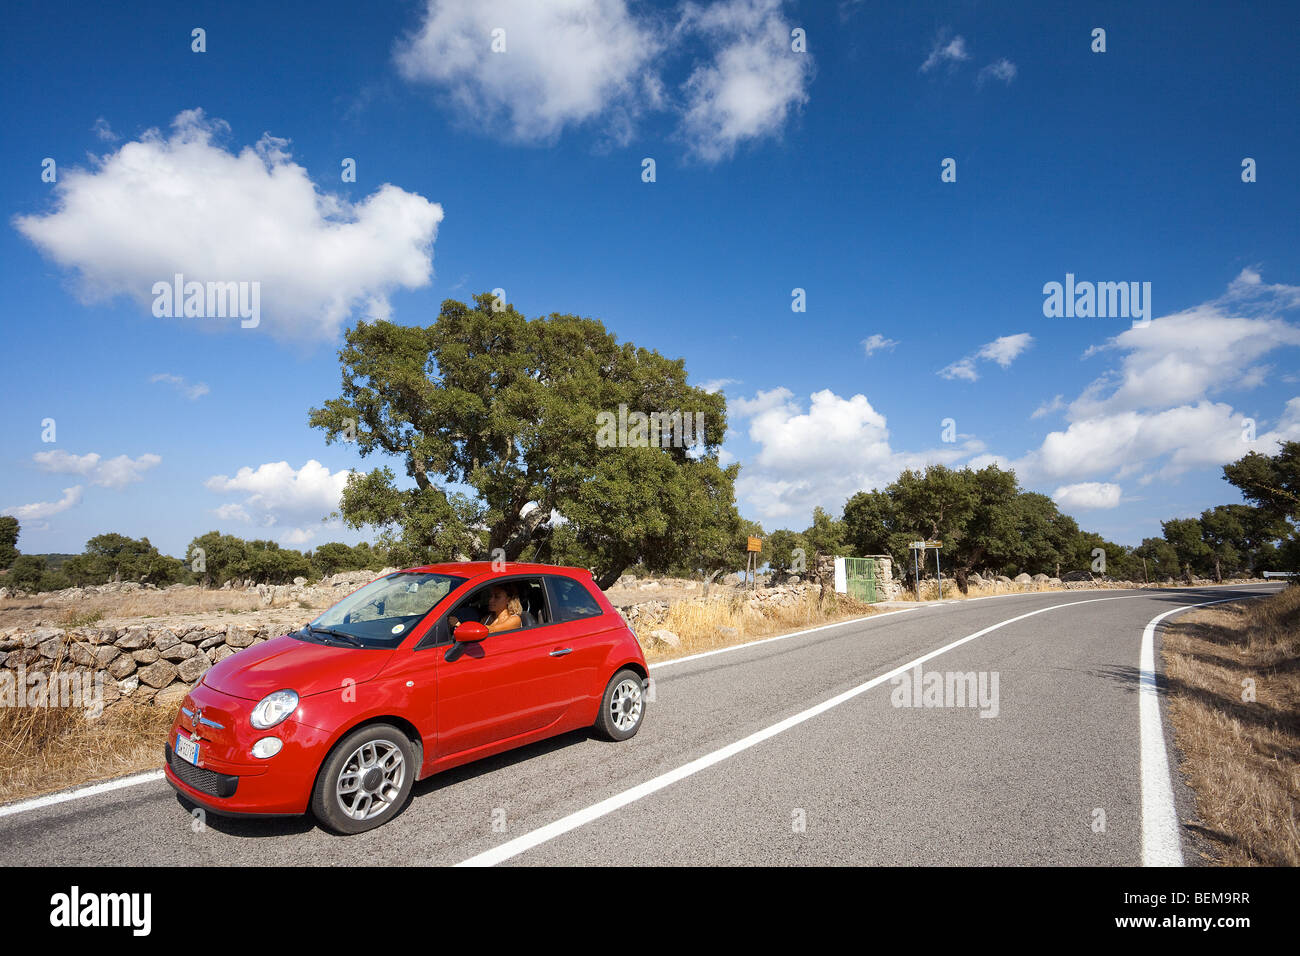 Sardinien-Auto-Tour mit Fiat 500. Panoramablick über die Region Sardinien mit einer Frau fahren. Italien-Auto-Tour. Stockfoto